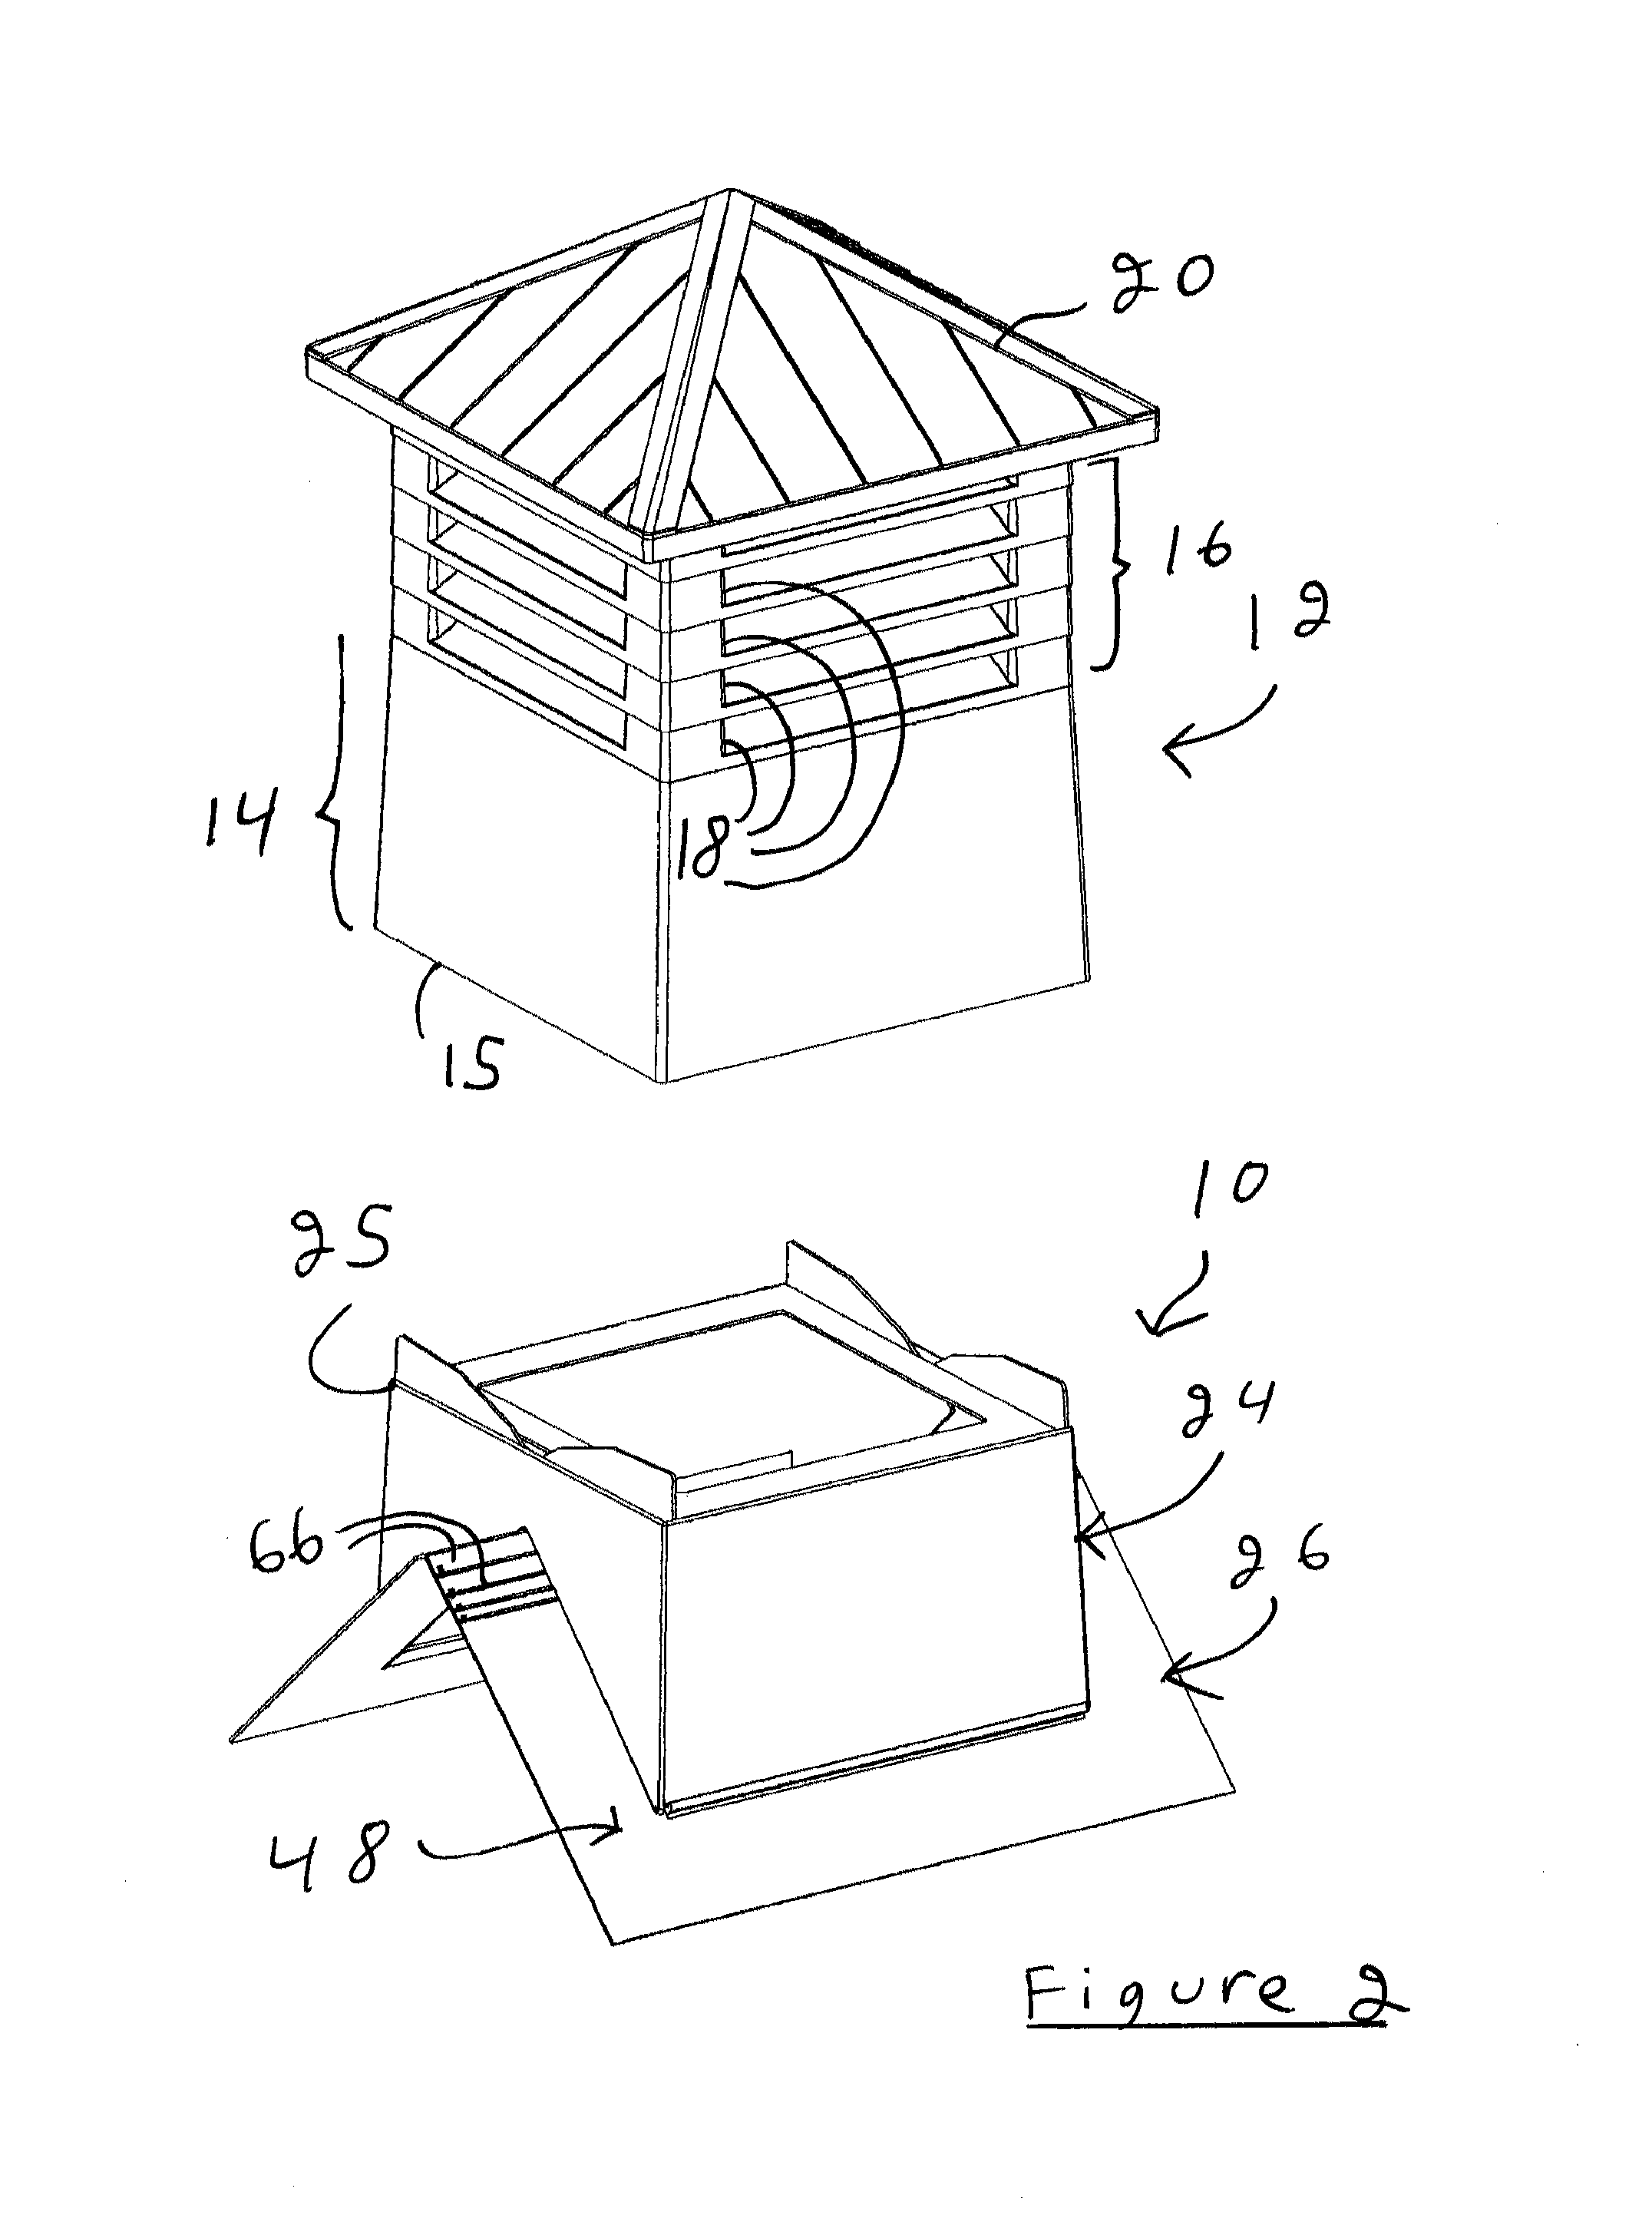 Adjustable roof ventilator base